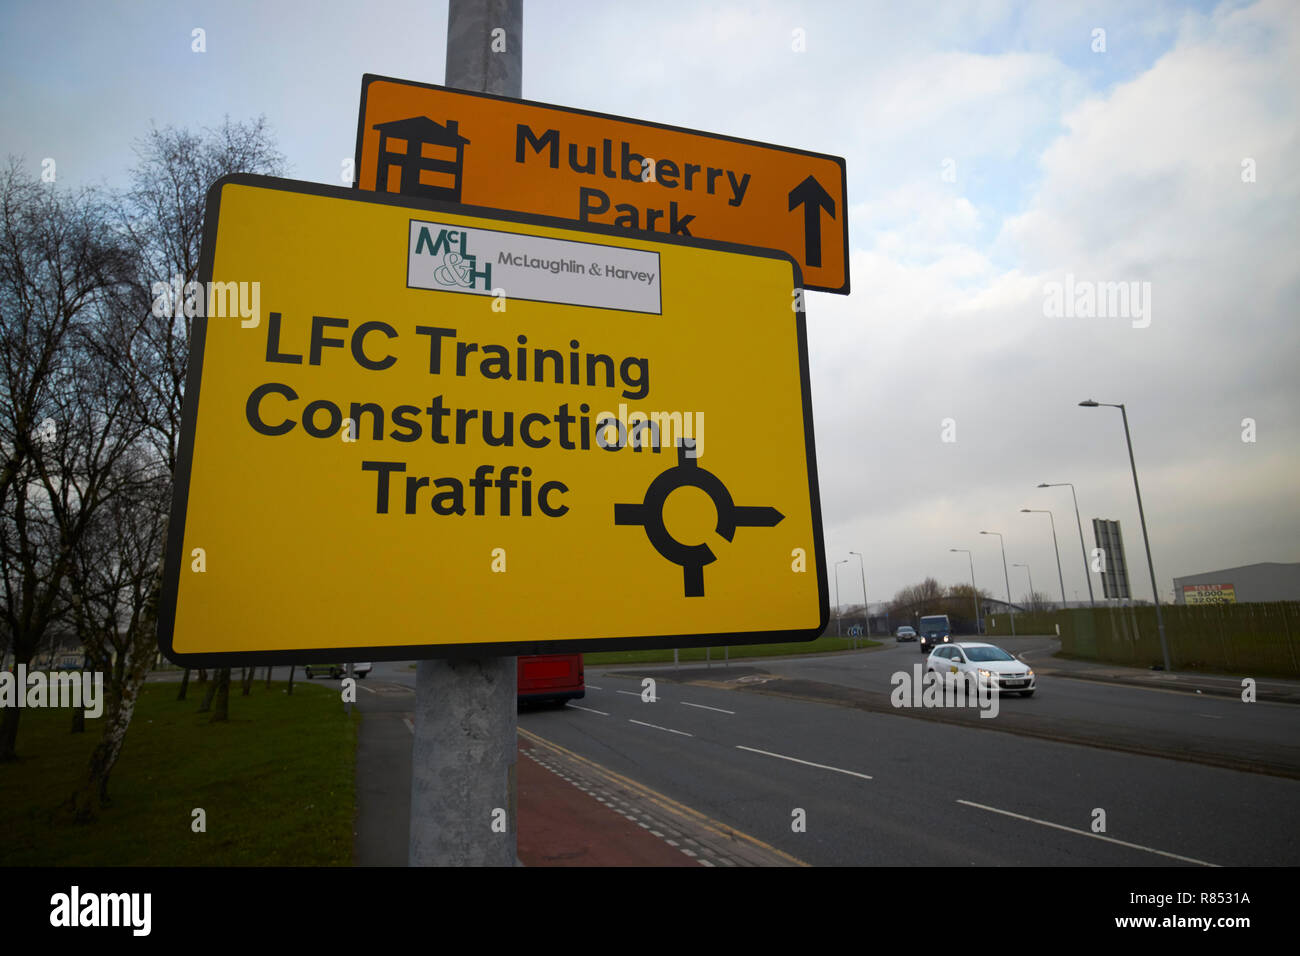 Des panneaux de direction route temporaire pour la construction de la circulation sur les clubs de football de Liverpool de nouvelles installations de formation à kirkby knowsley Merseyside England uk Banque D'Images